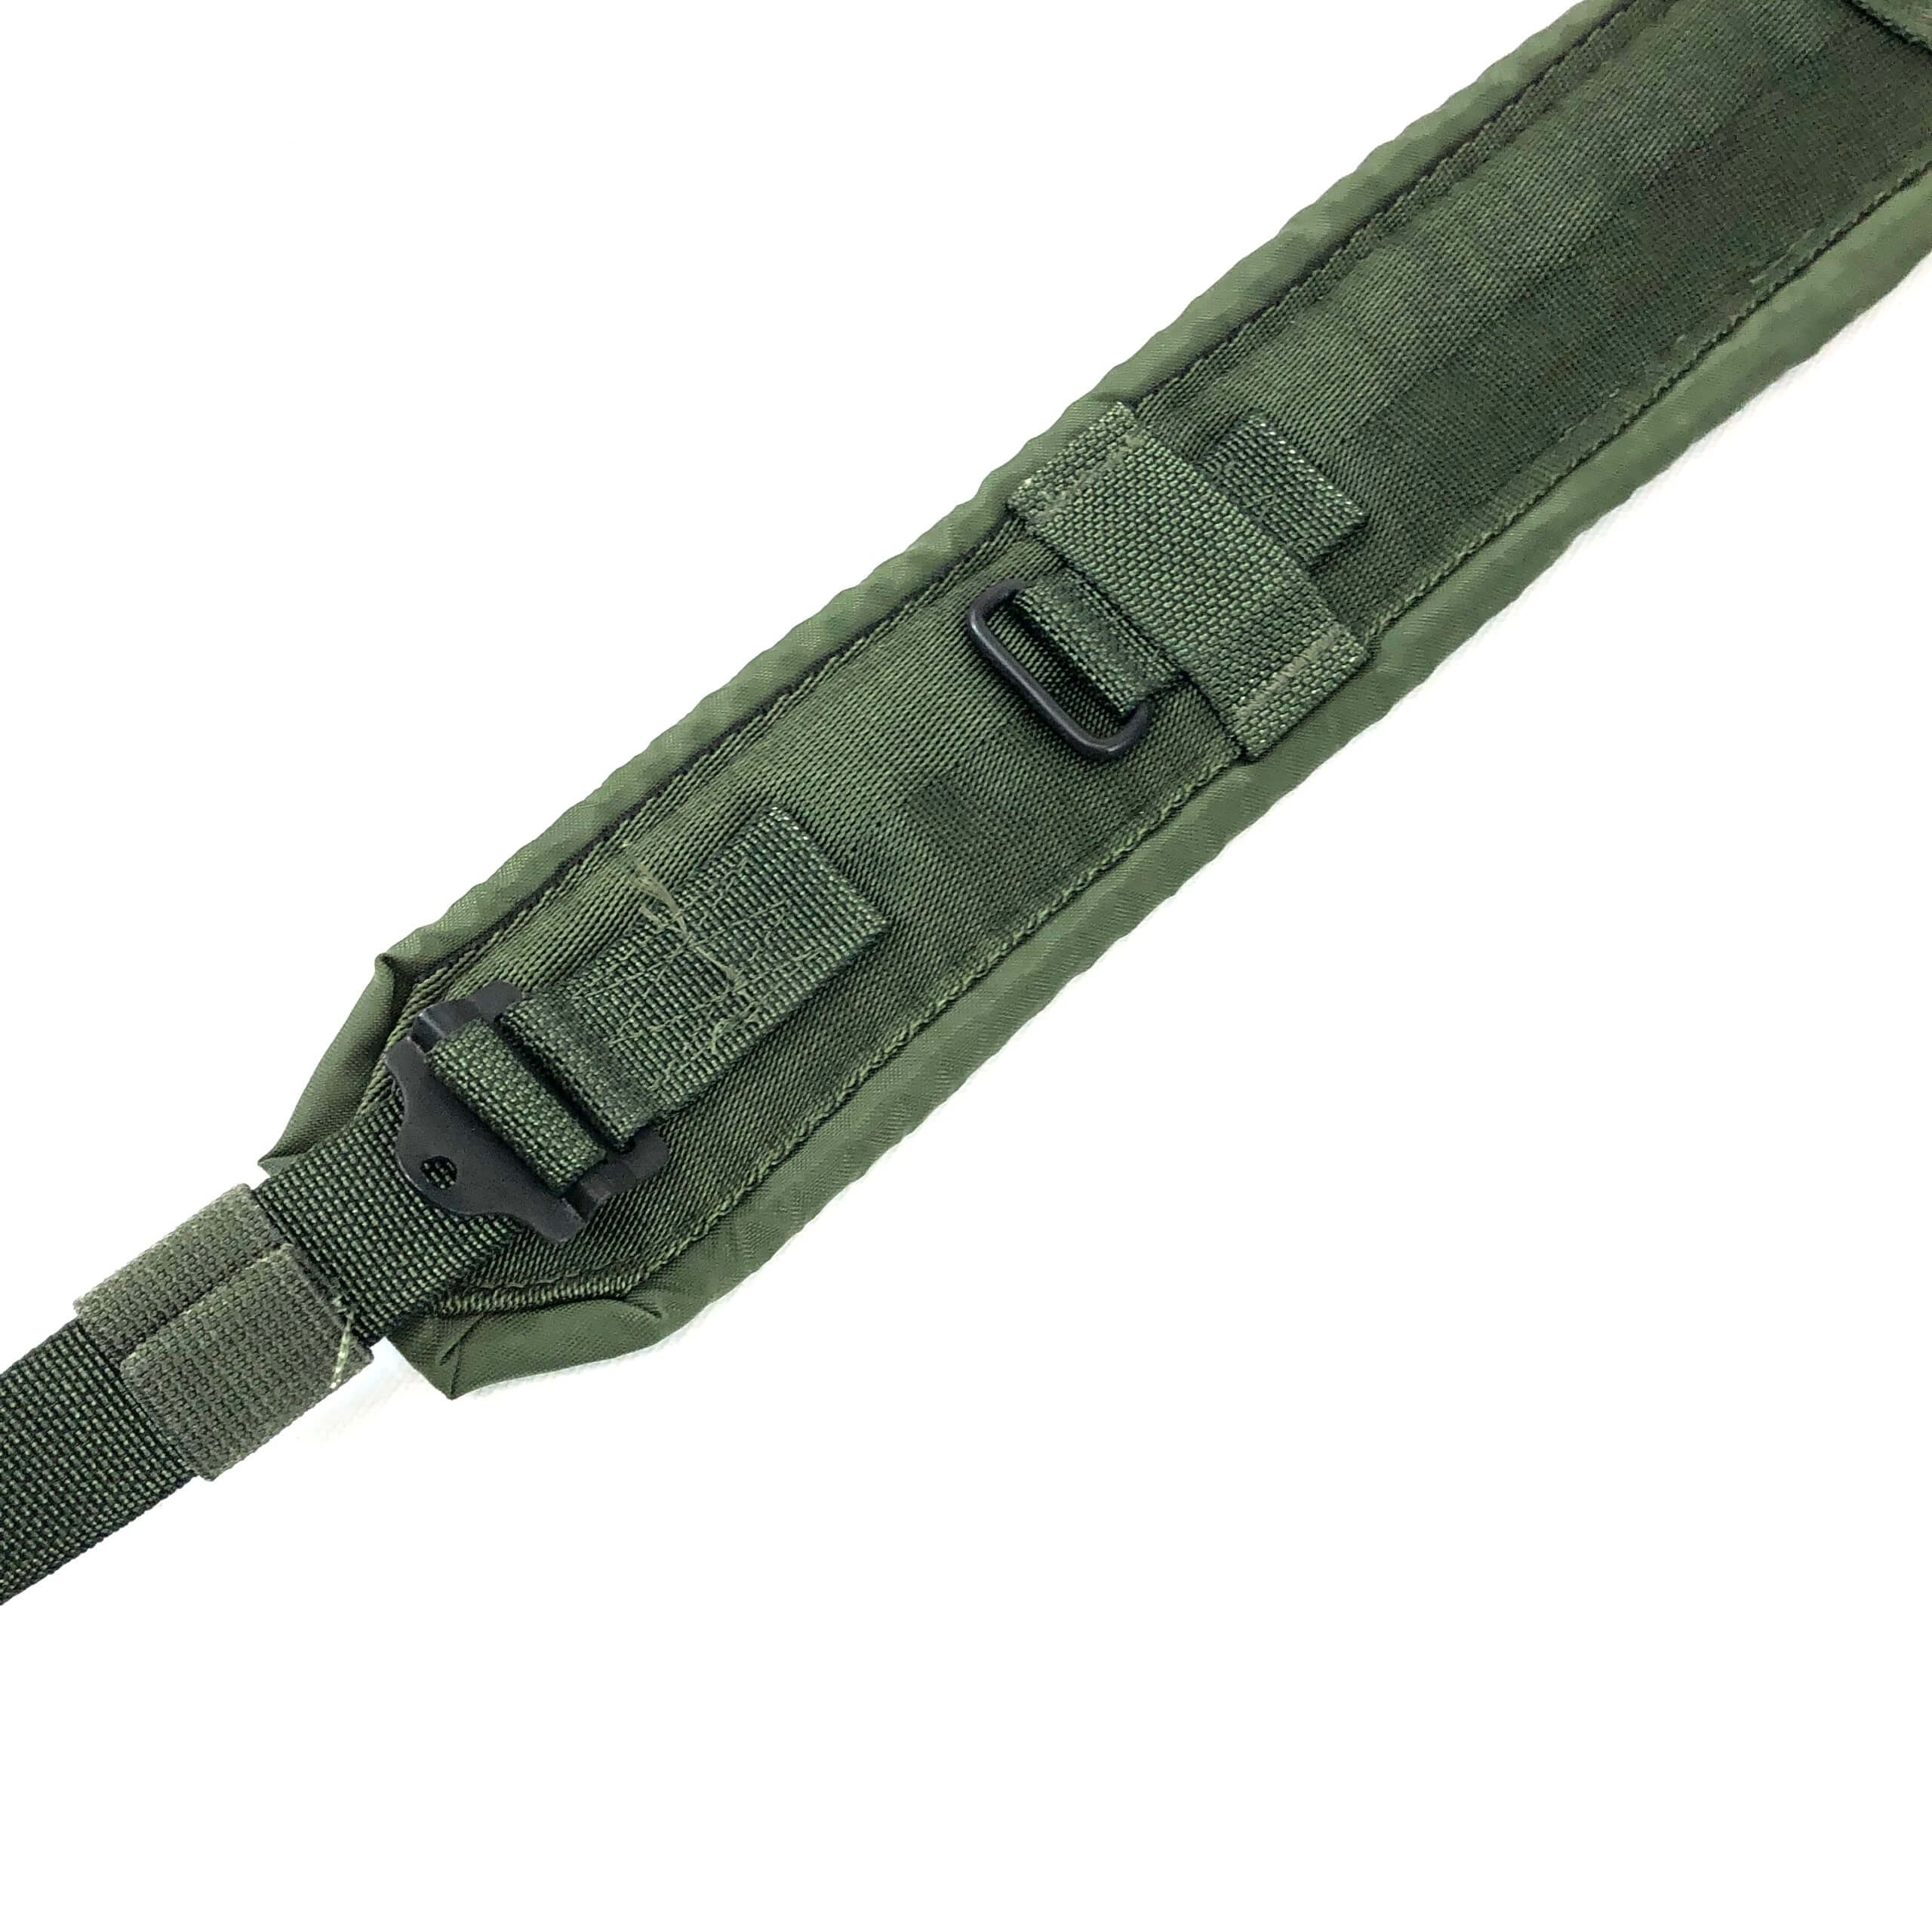 US Army Suspenders oliv grün green LC-2 Koppeltragegeschirr ALICE LC 